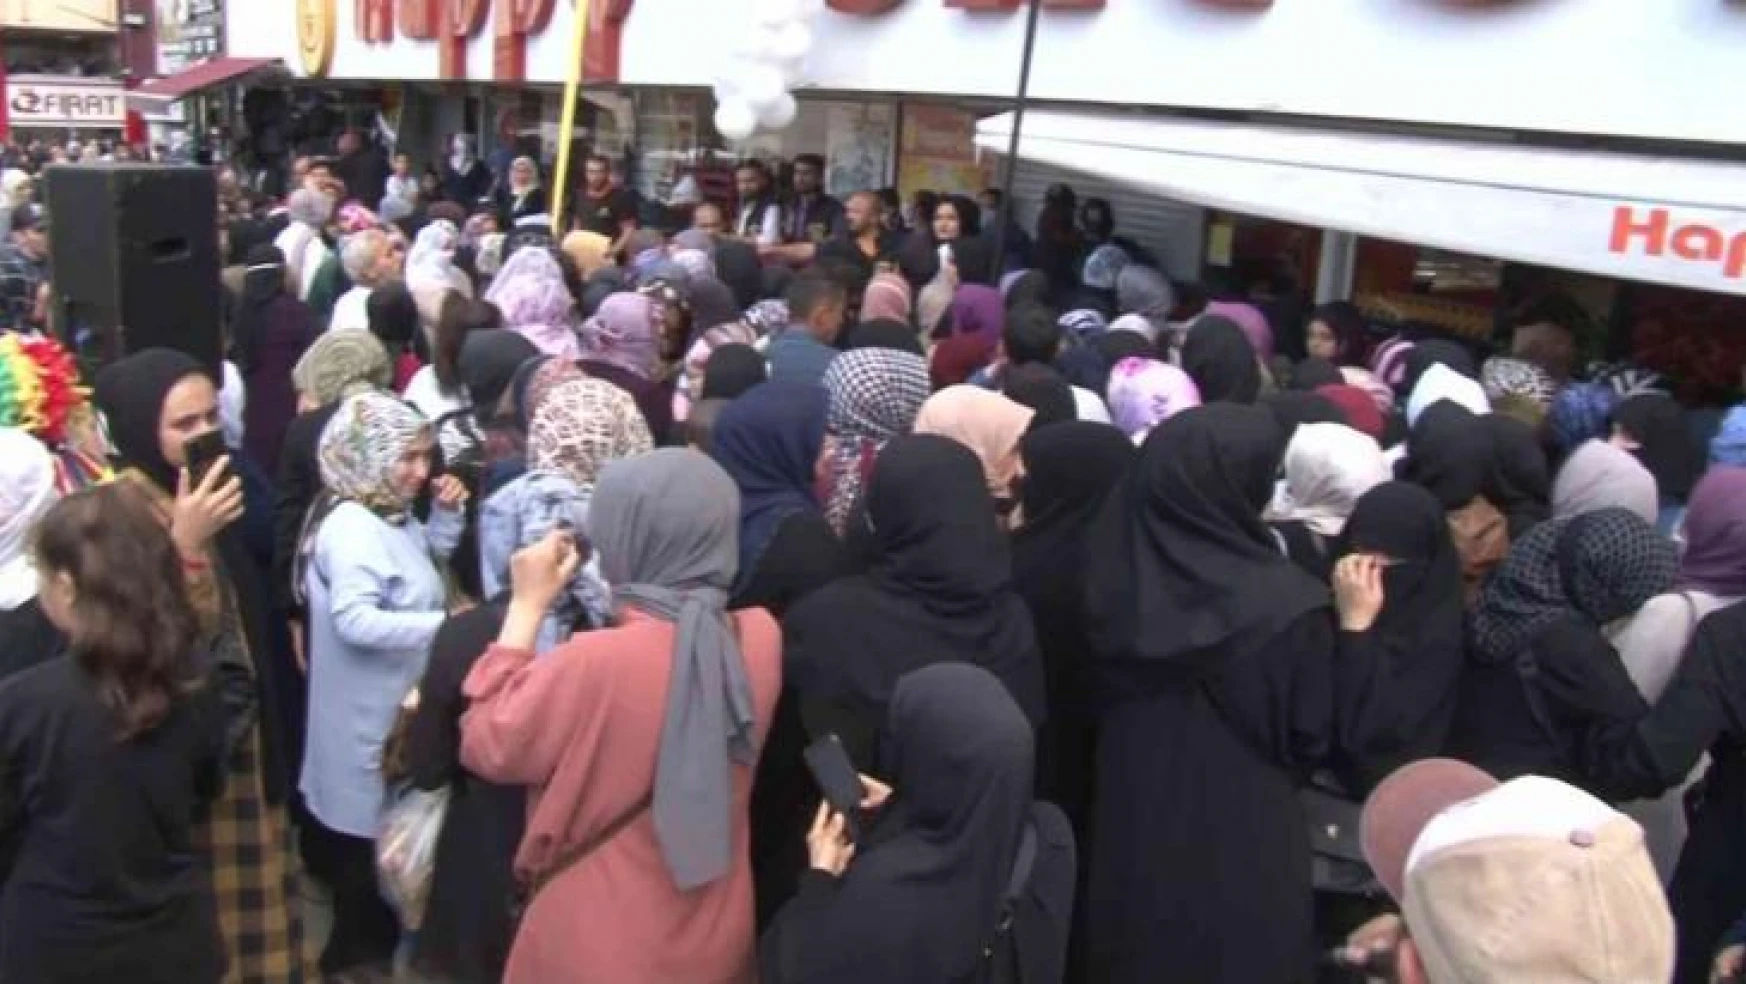 İstanbul'da indirim izdihamı: Mağazanın kepenkleri kapatıldı